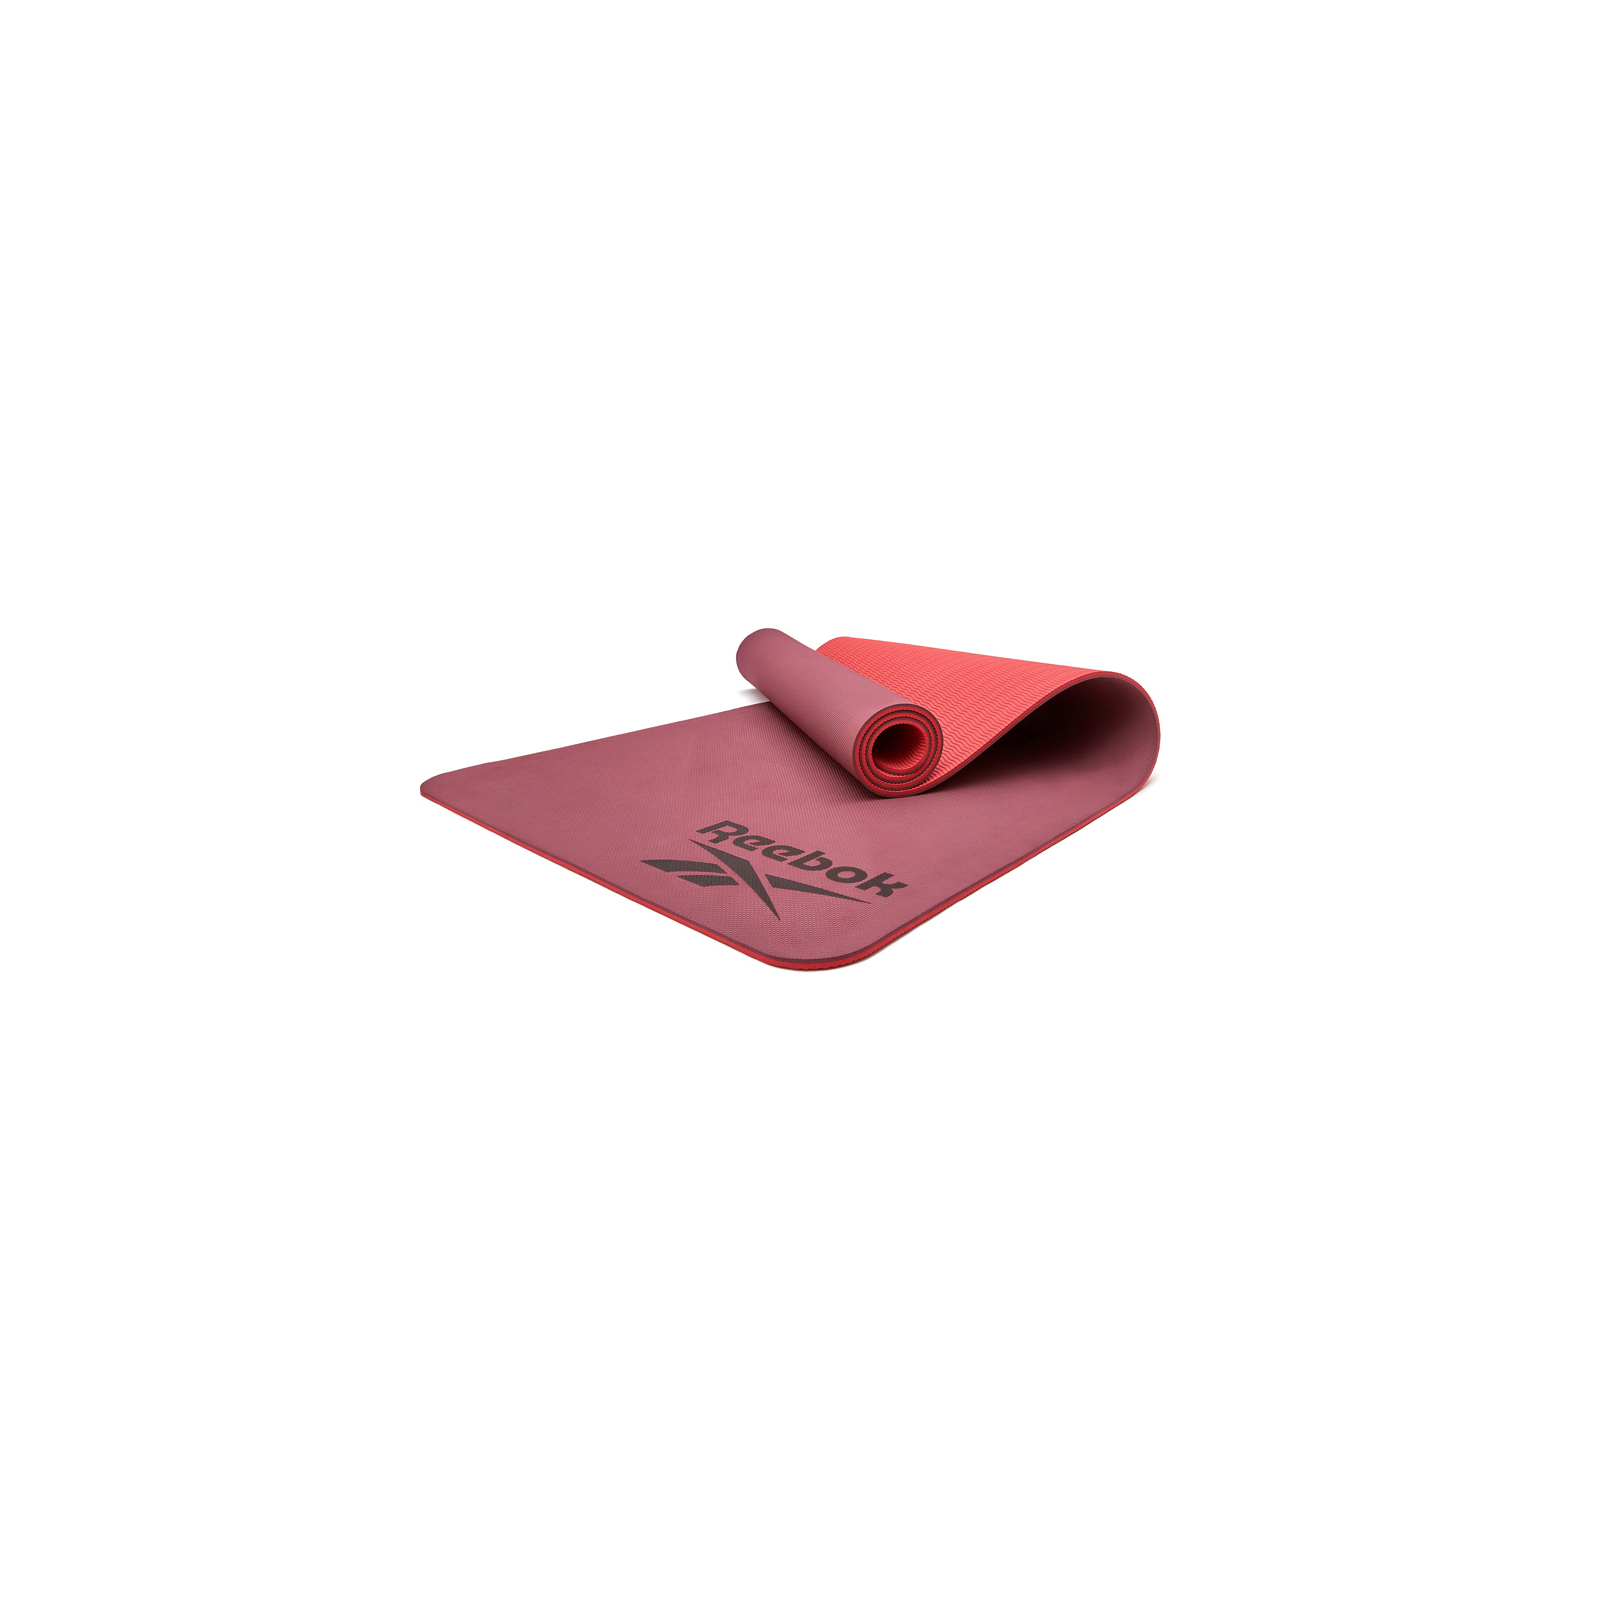 Коврик для йоги Reebok Double Sided Yoga Mat фіолетовий RAYG-11042PL (885652020848)